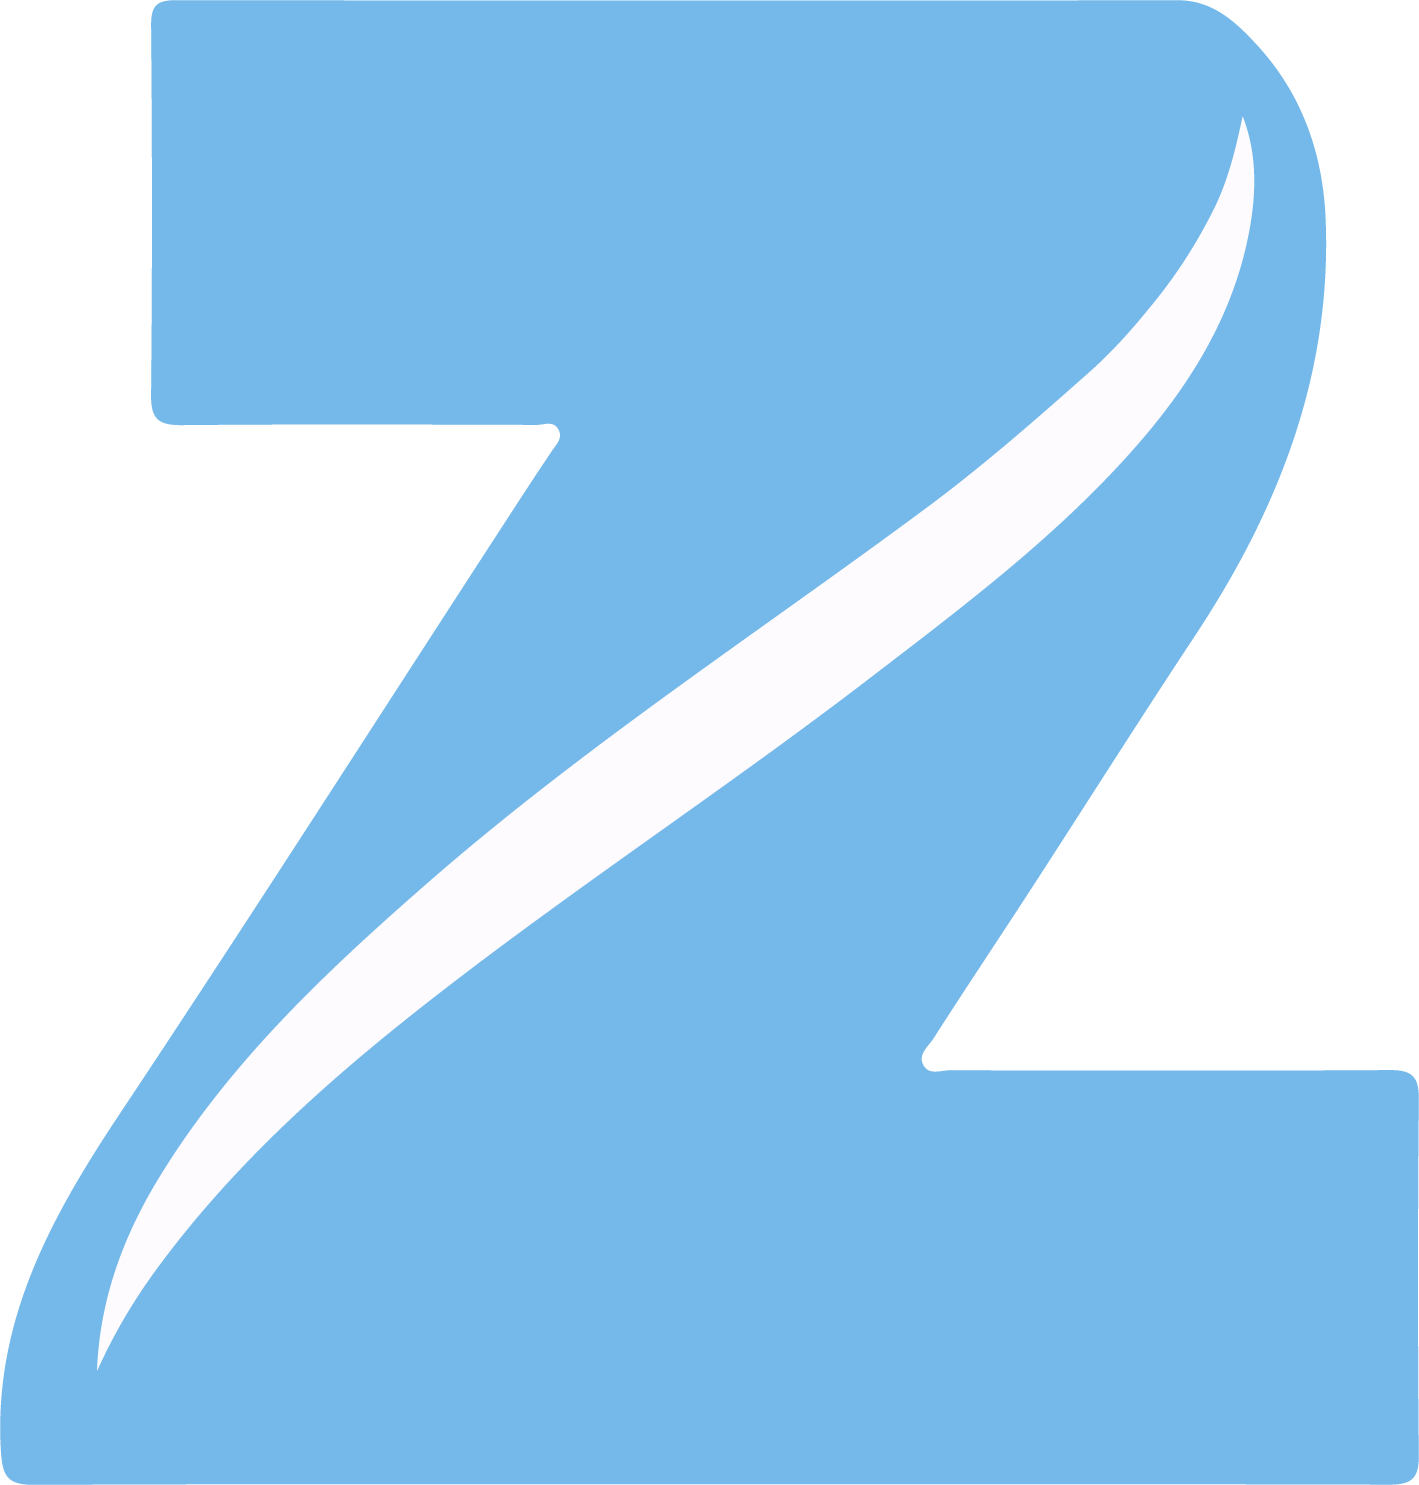 Kidzee - Google Play પર ઍપ્લિકેશનો